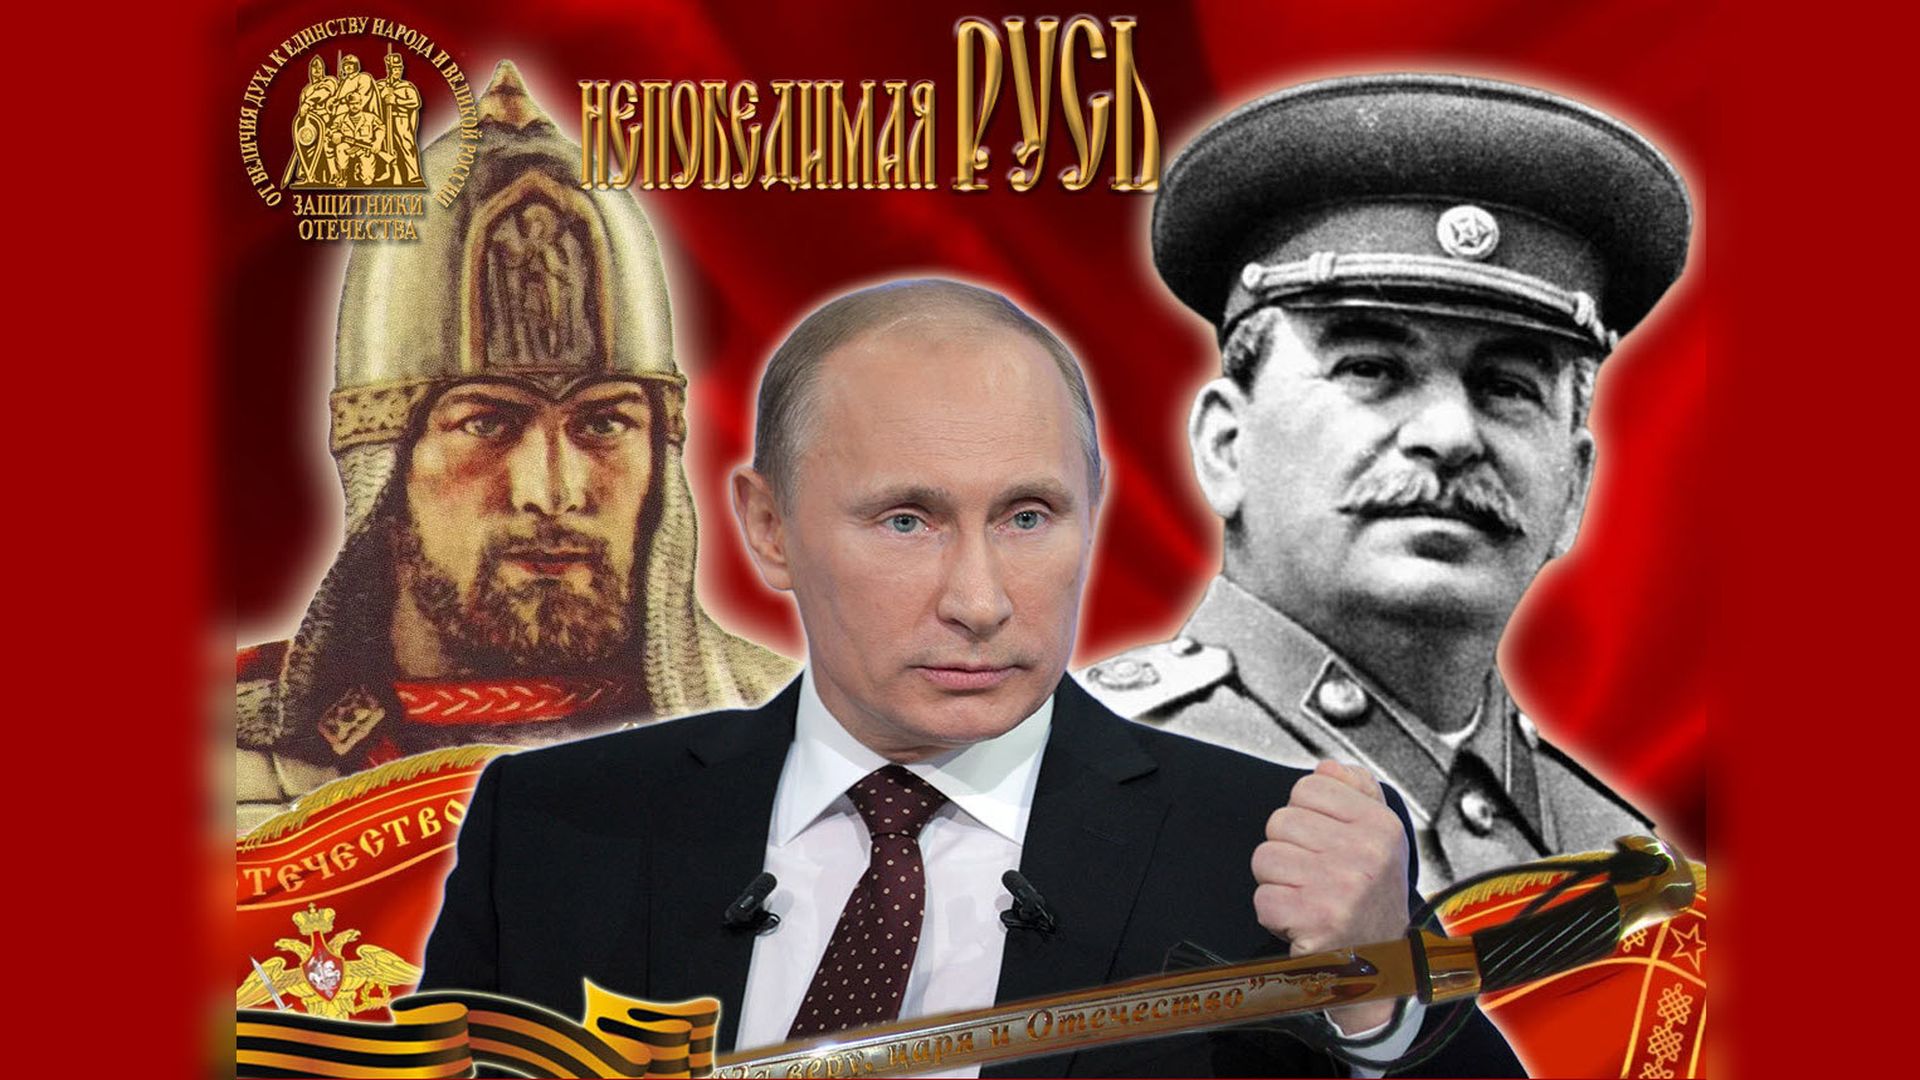 Посвящается нашему президенту В.В.Путину.